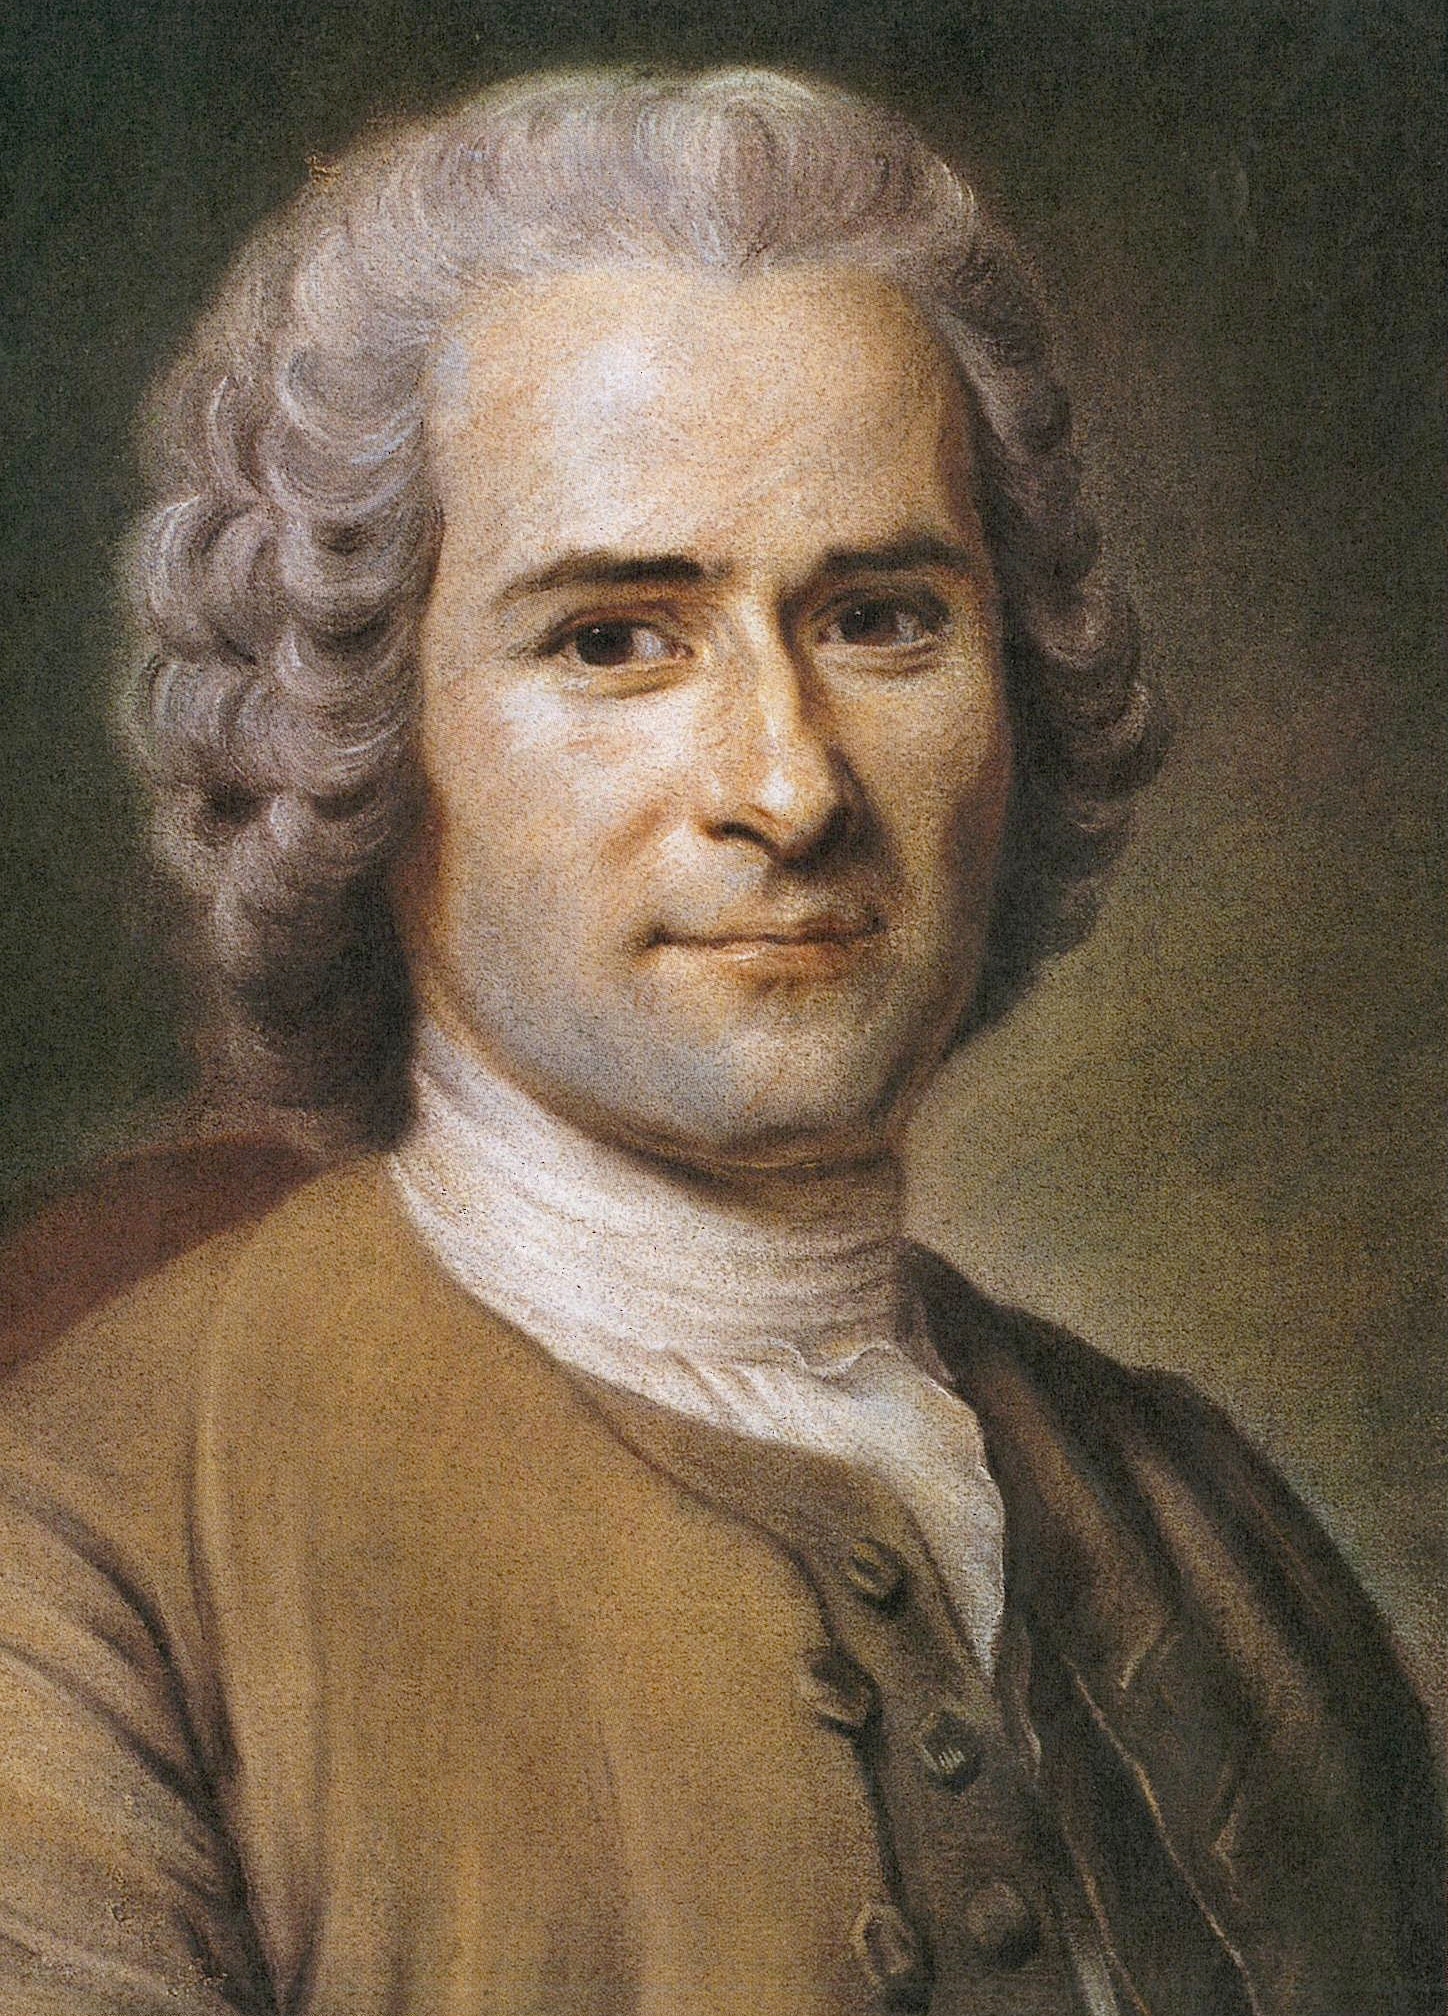 auteur Jean-Jacques Rousseau de la citation La vérité abstraite est l'œil de la raison.